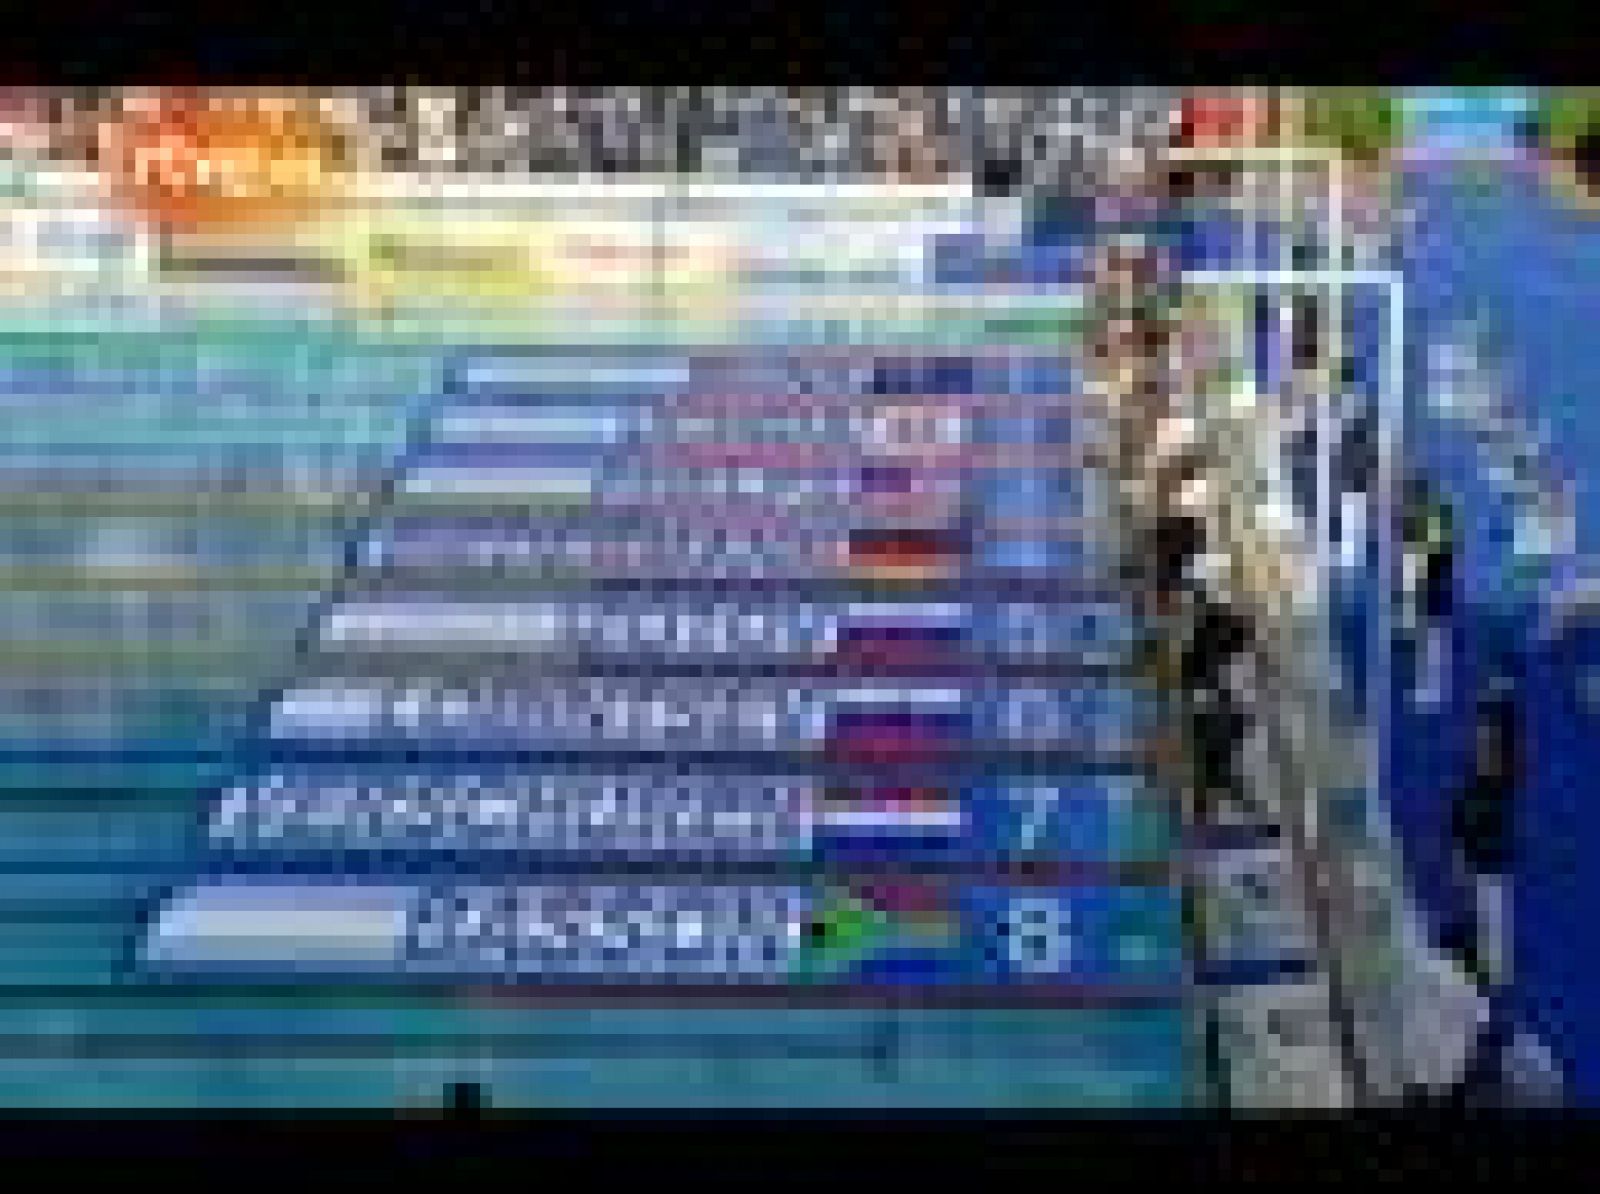 El nadador alemán Paul Biedermann se impuso al estadounidense Michael Phelps en la final de los 200 metros libres del Mundial de Natación de Roma 2009 con un tiempo de 1:42, que supone un nuevo récord del mundo en la categoría.